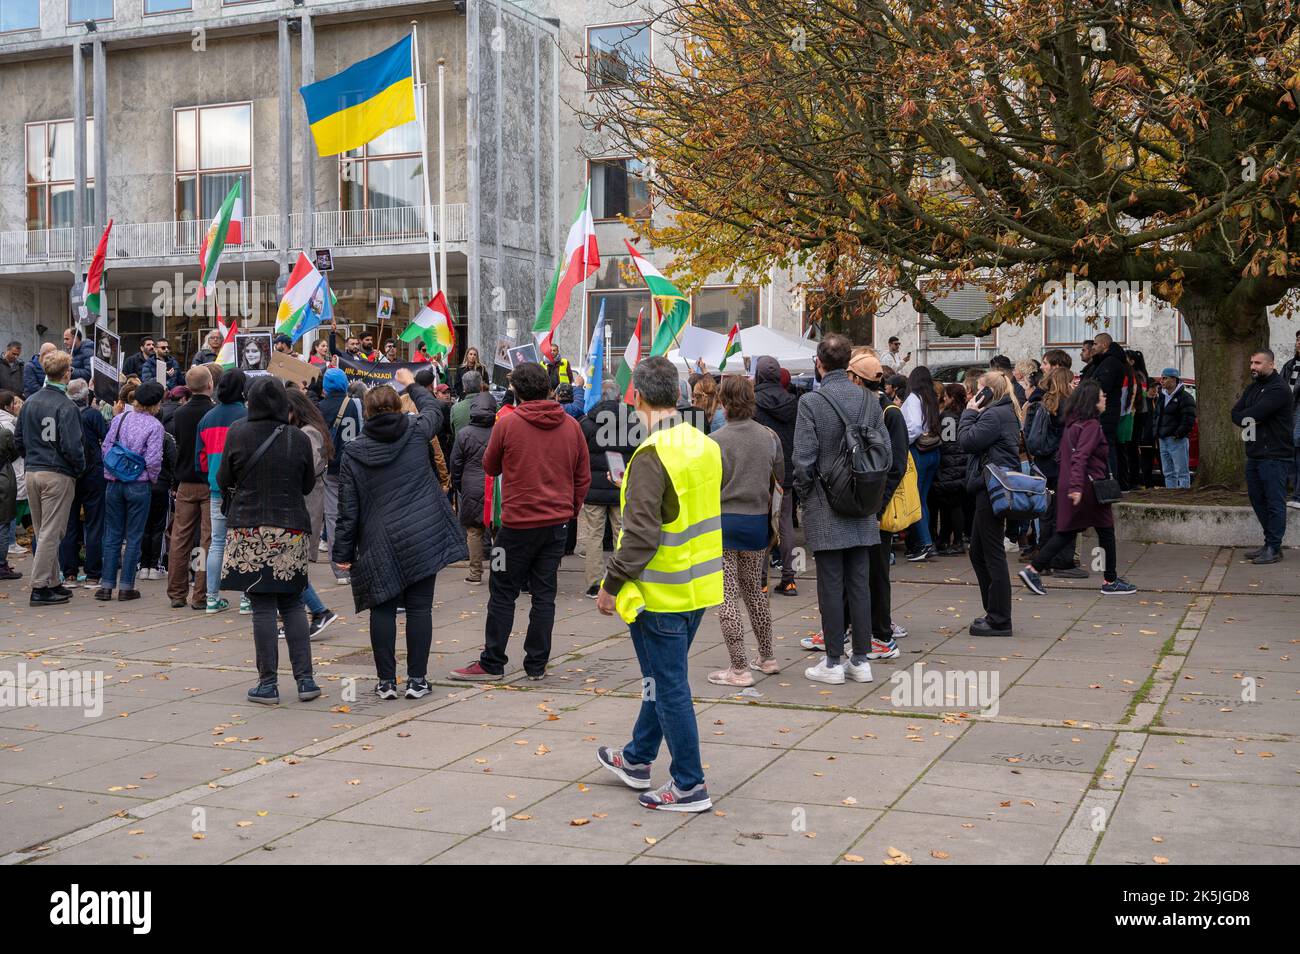 Manifestation de soutien aux femmes, à la vie et à la liberté après la mort de la femme iranienne Mahsa Amini, à Aarhus (Danemark), le 8 octobre 2022 Banque D'Images